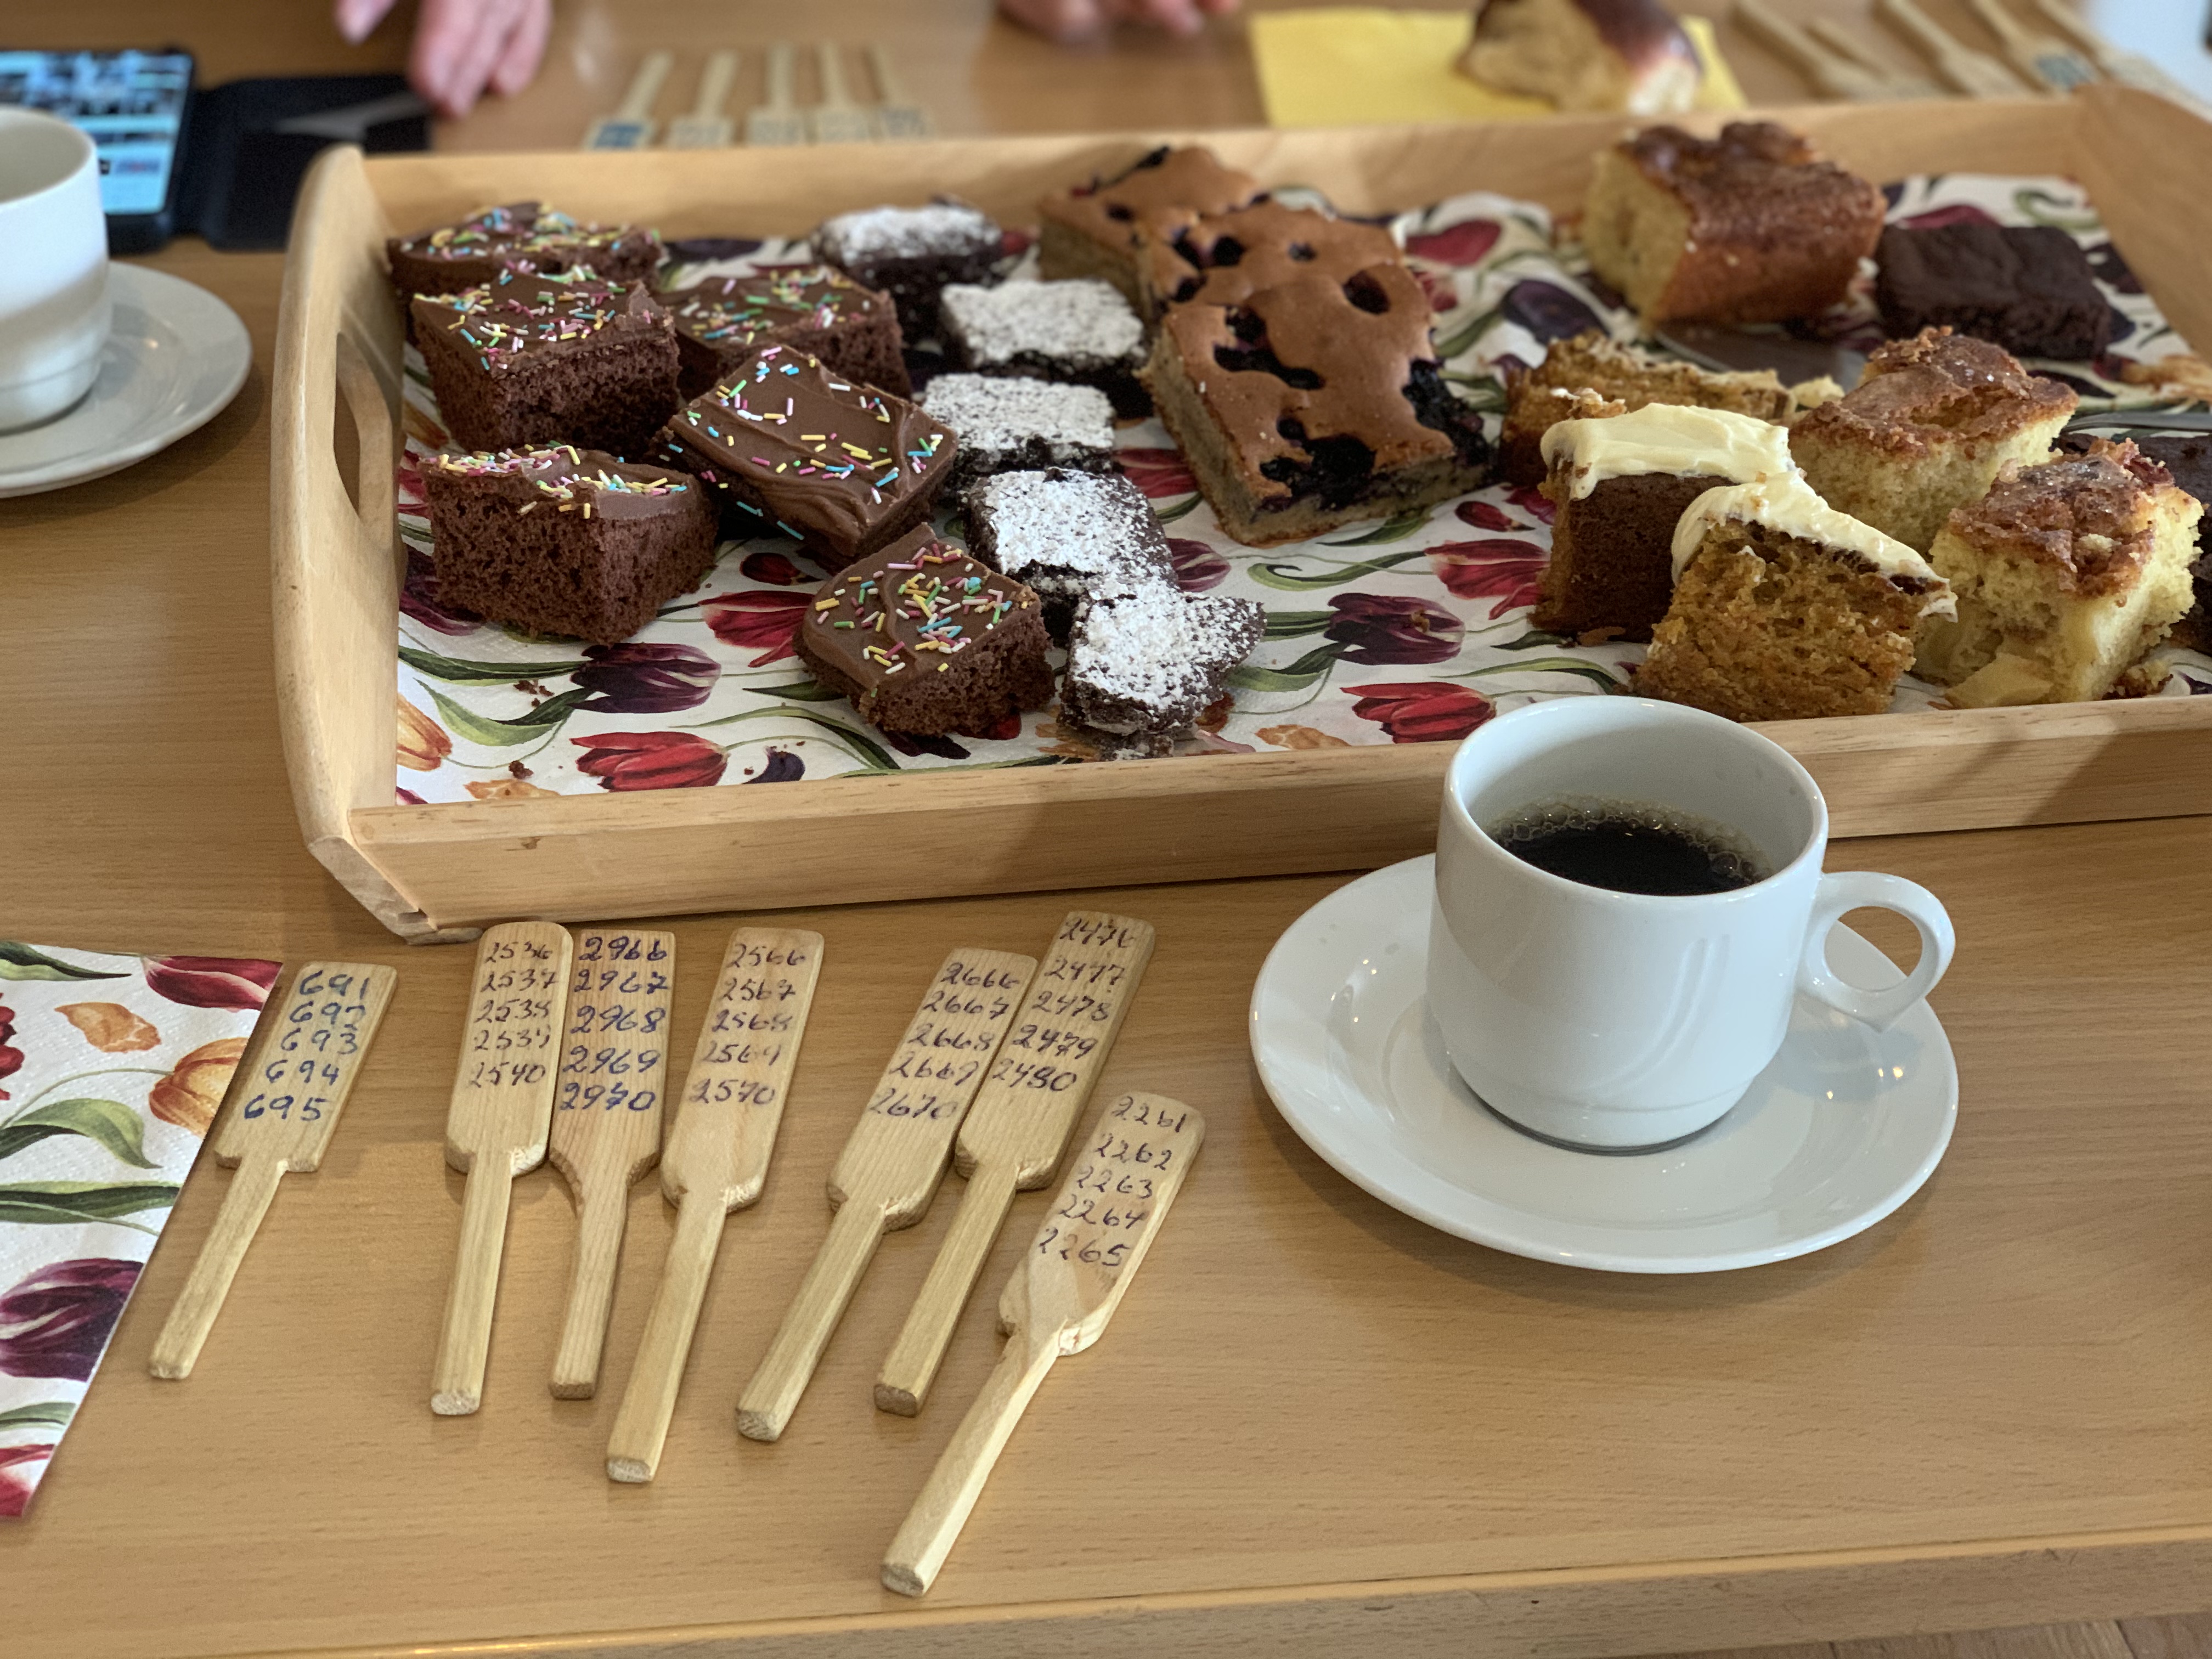 På et bord ligger basarårer, forskjellige kaker på et brett og en kopp kaffe